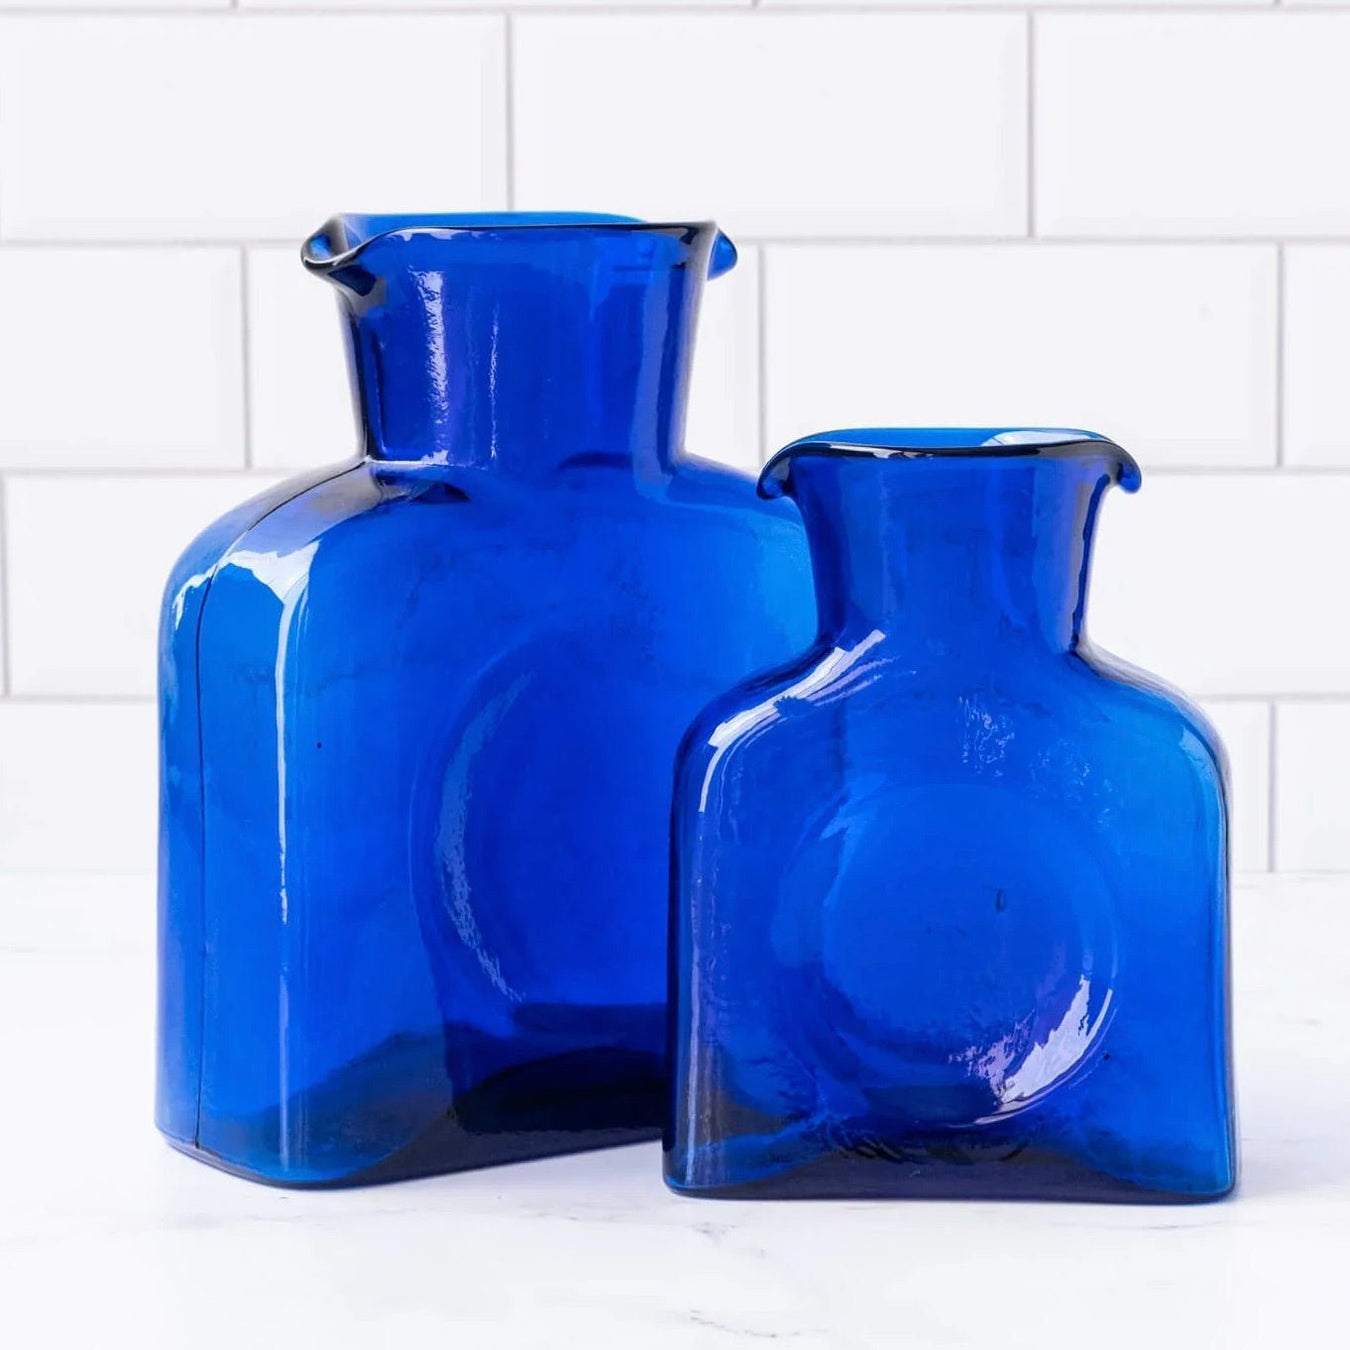 https://shops.mountvernon.org/cdn/shop/products/cobalt-blue-water-bottle-blenko-glass-mini-or-large-435223_1350x1350.jpg?v=1696614859